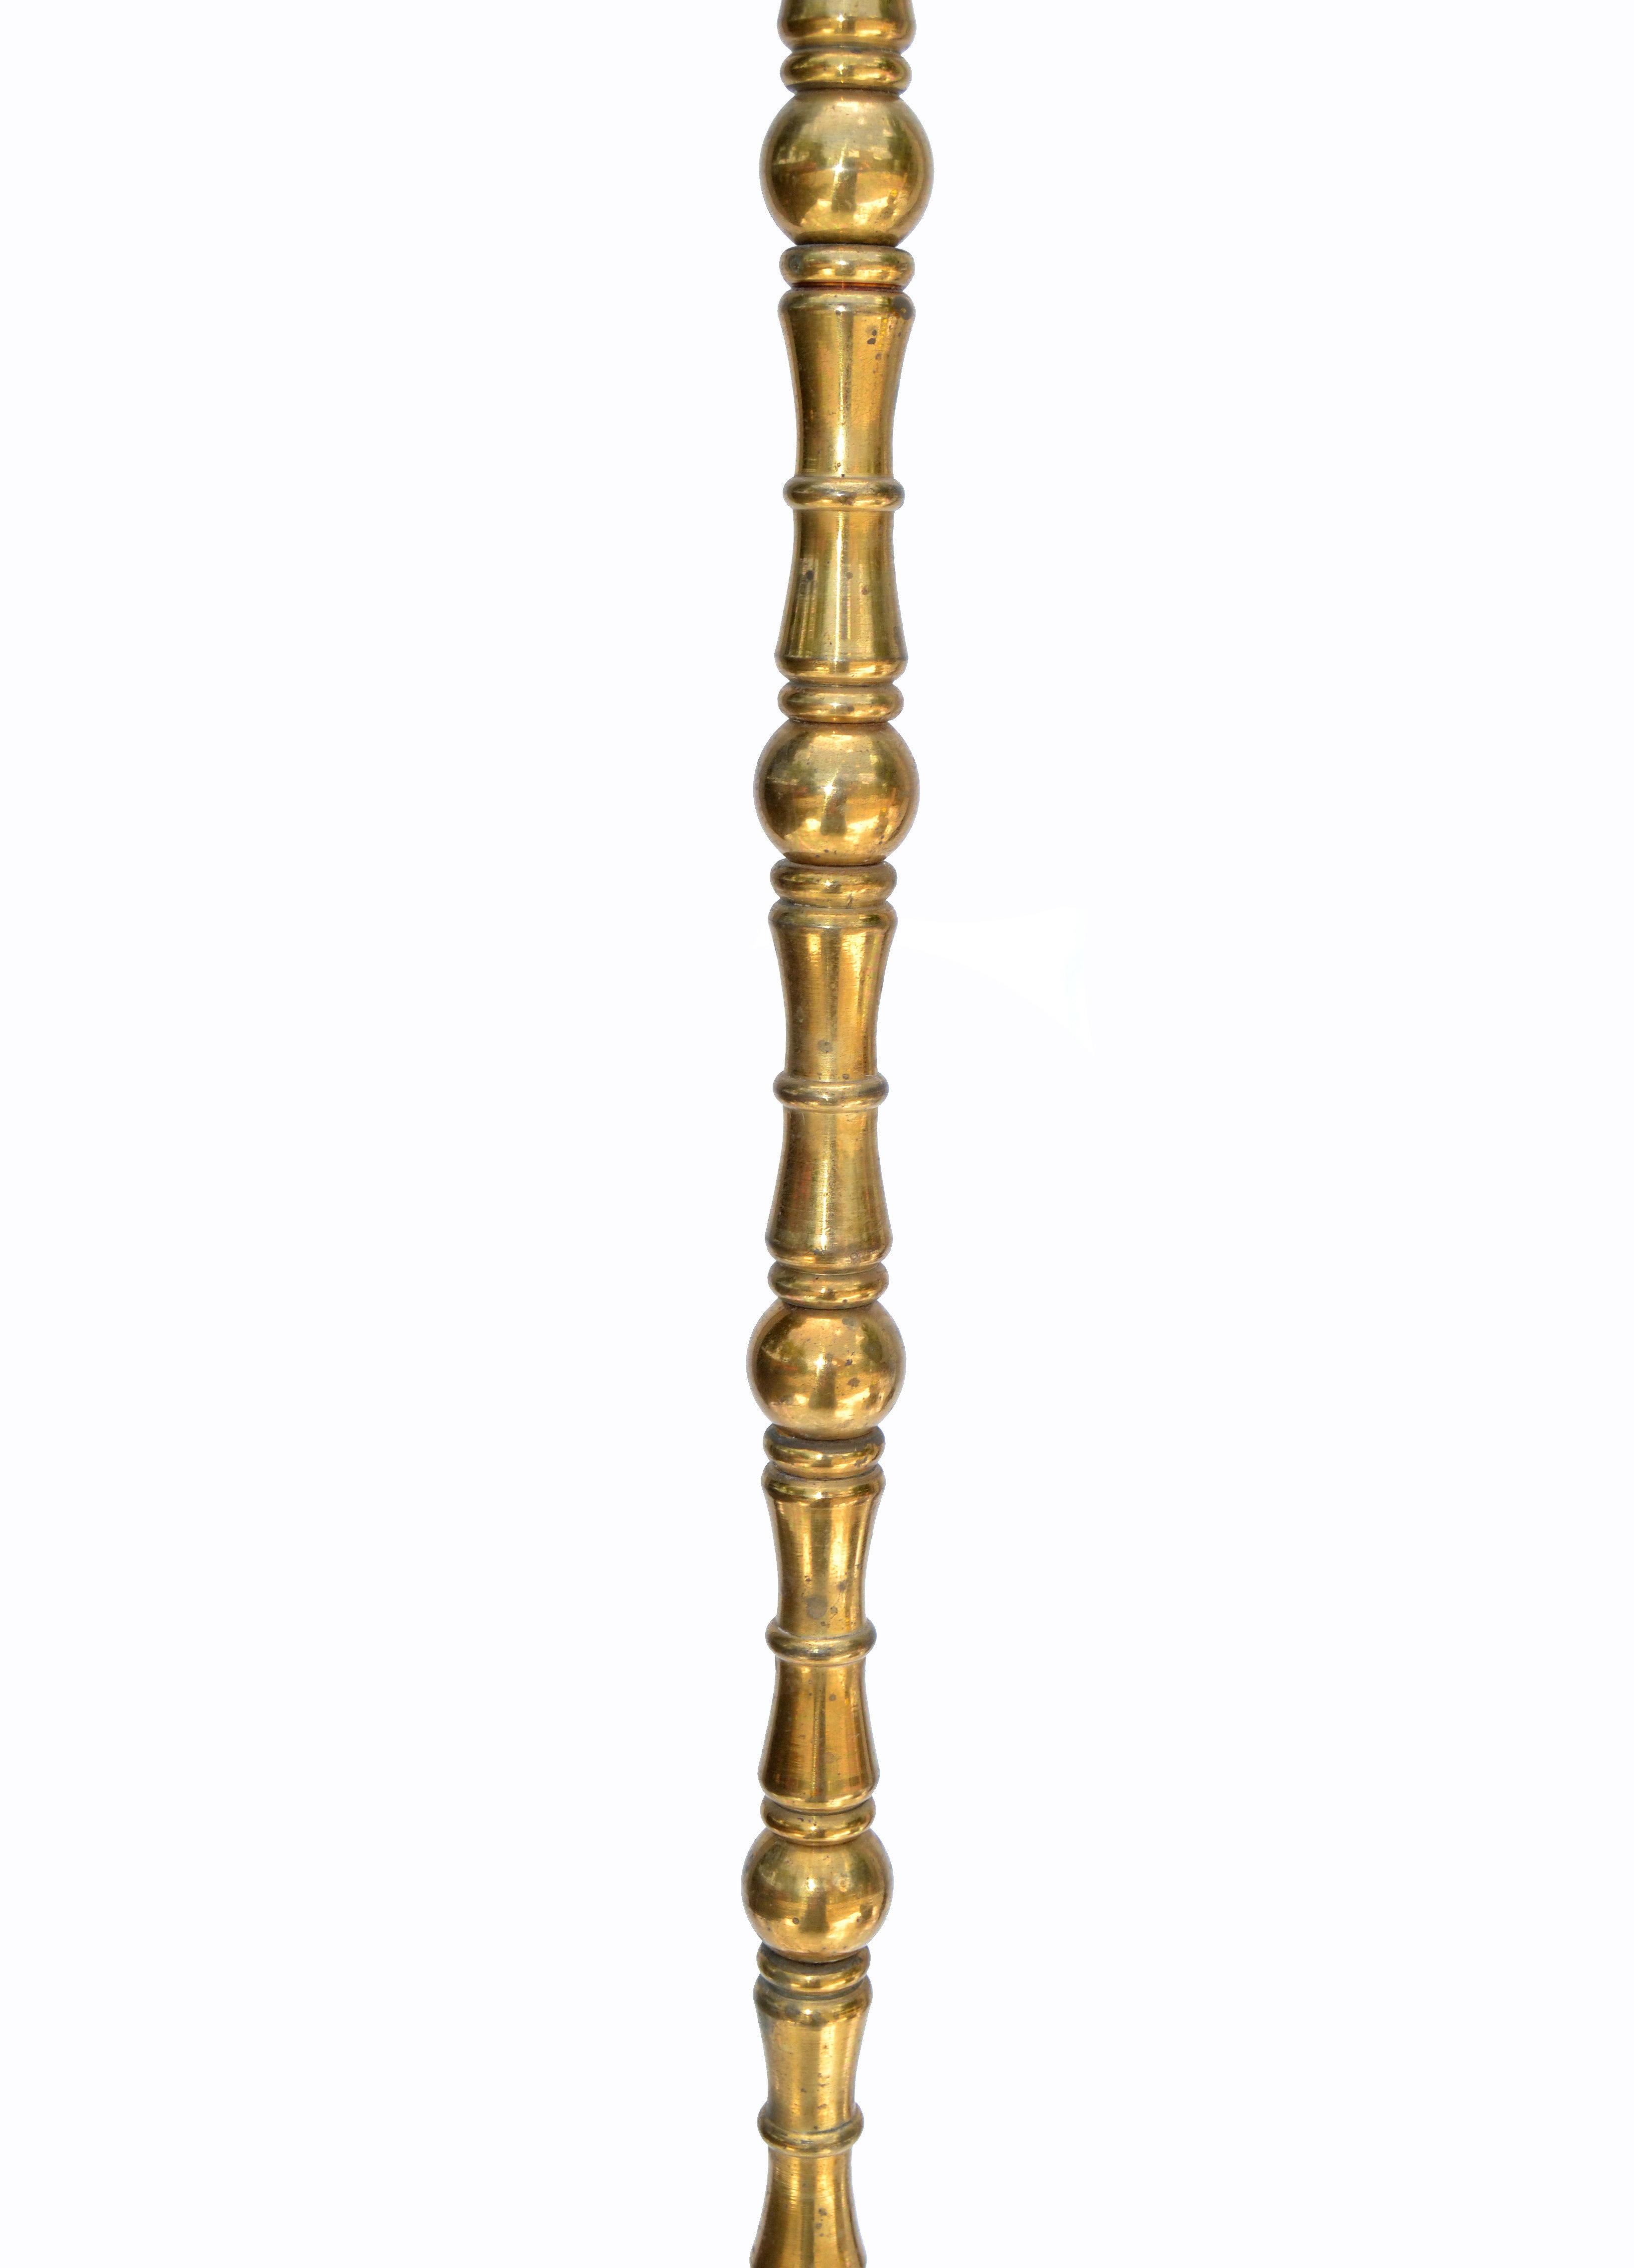 Lampadaire néoclassique de la Maison Baguès en bronze de style bambou fabriqué en France dans les années 1950.
. 75 watts.
Classique et élégant, mais aussi pratique.
Note : Pas d'ombre.